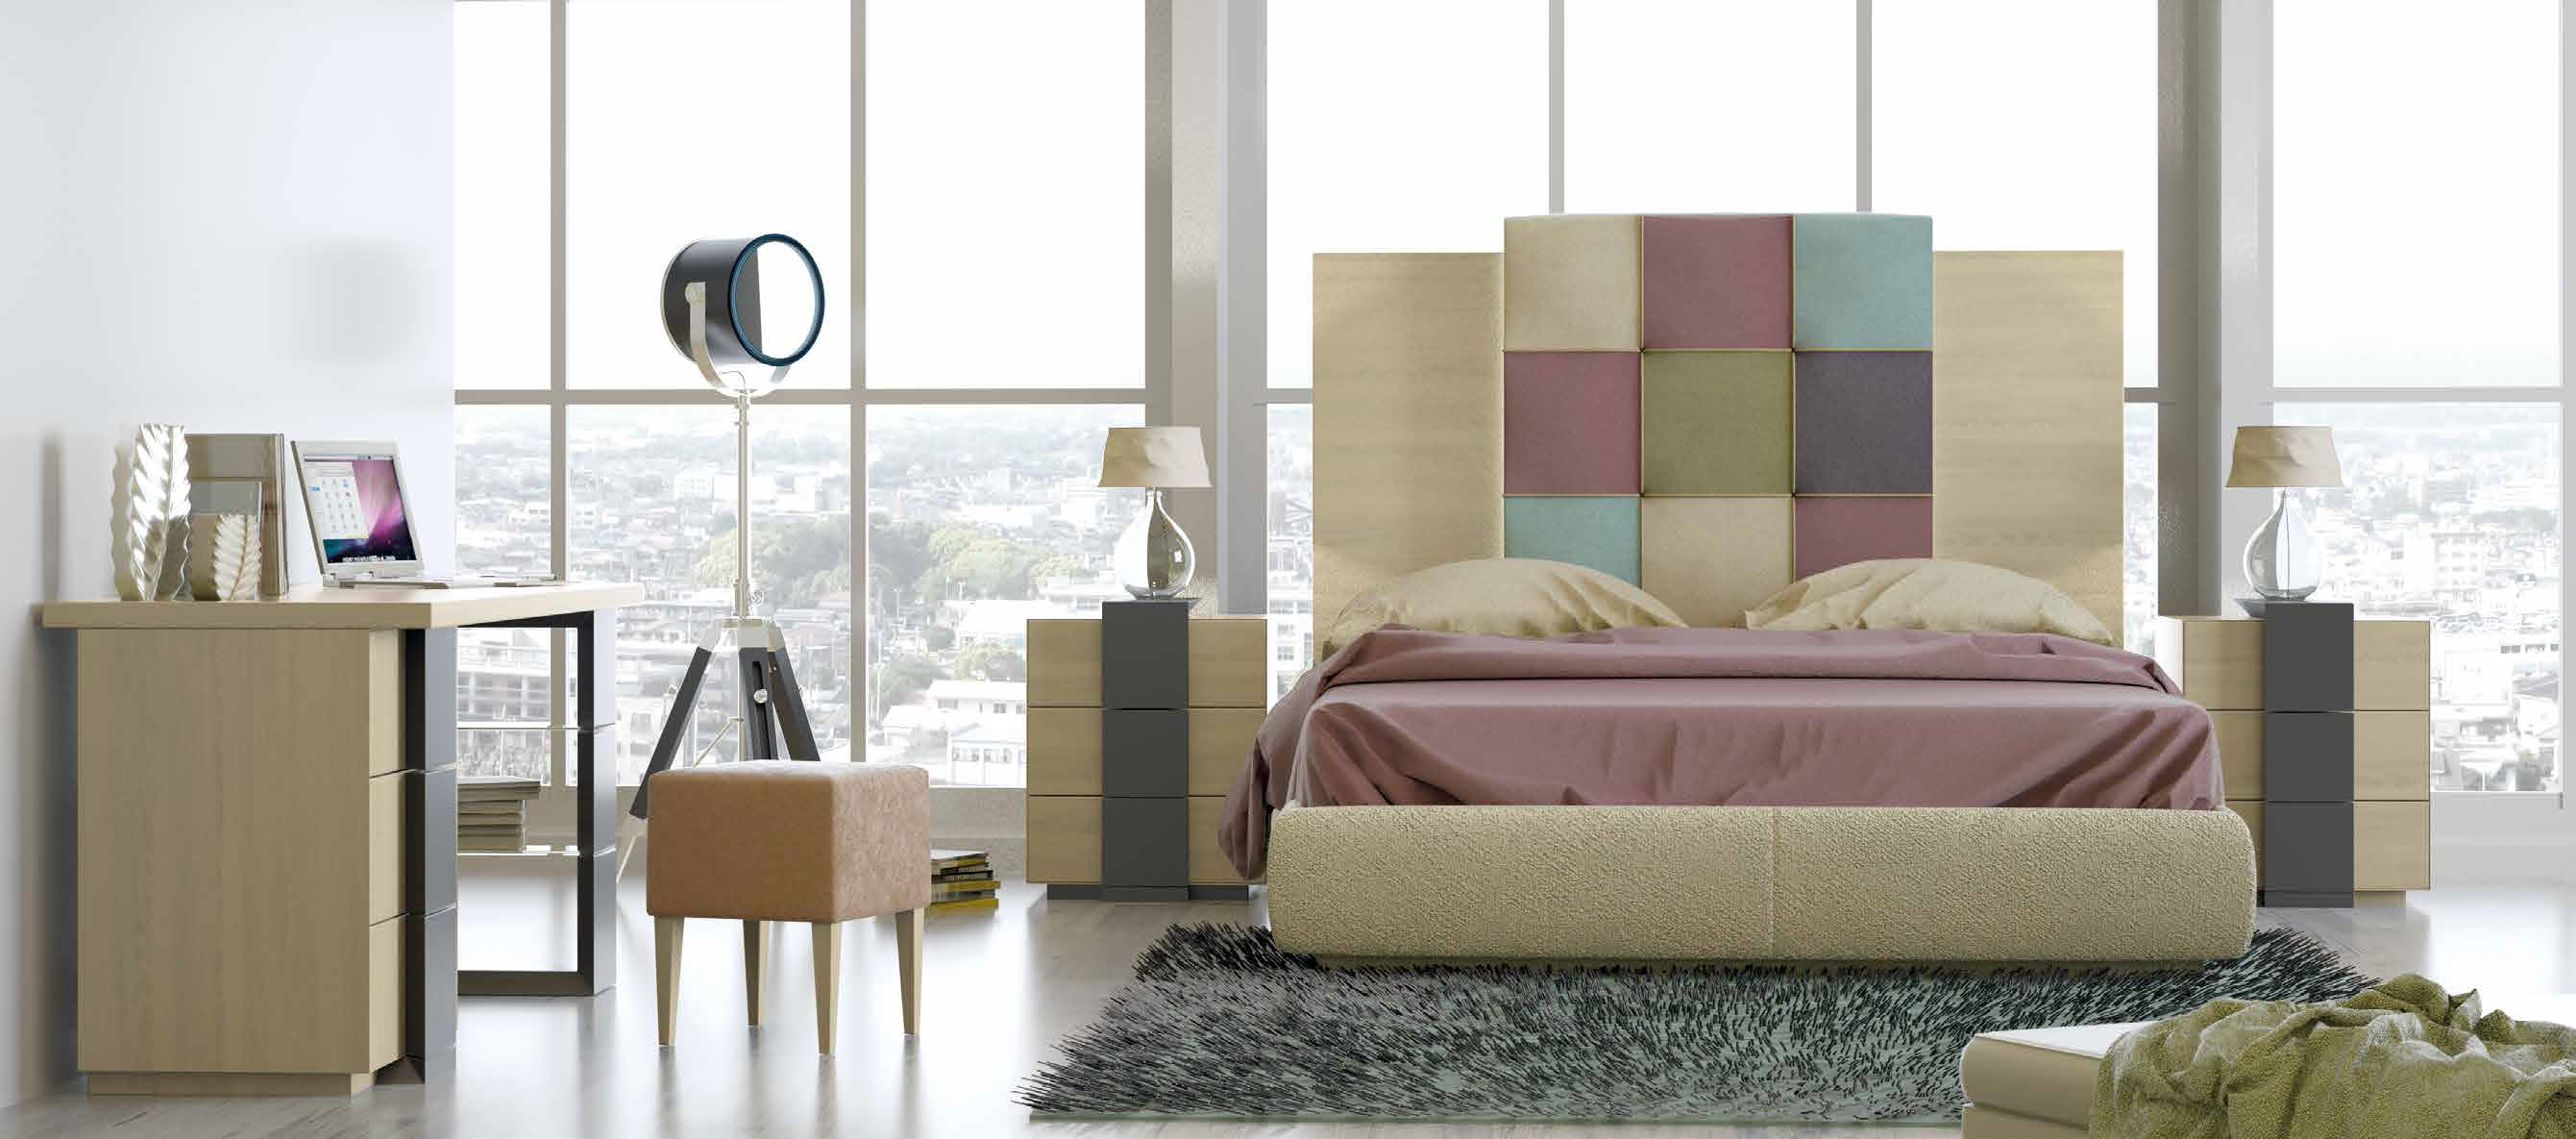 Brands Franco Furniture Avanty Bedrooms, Spain DOR 12